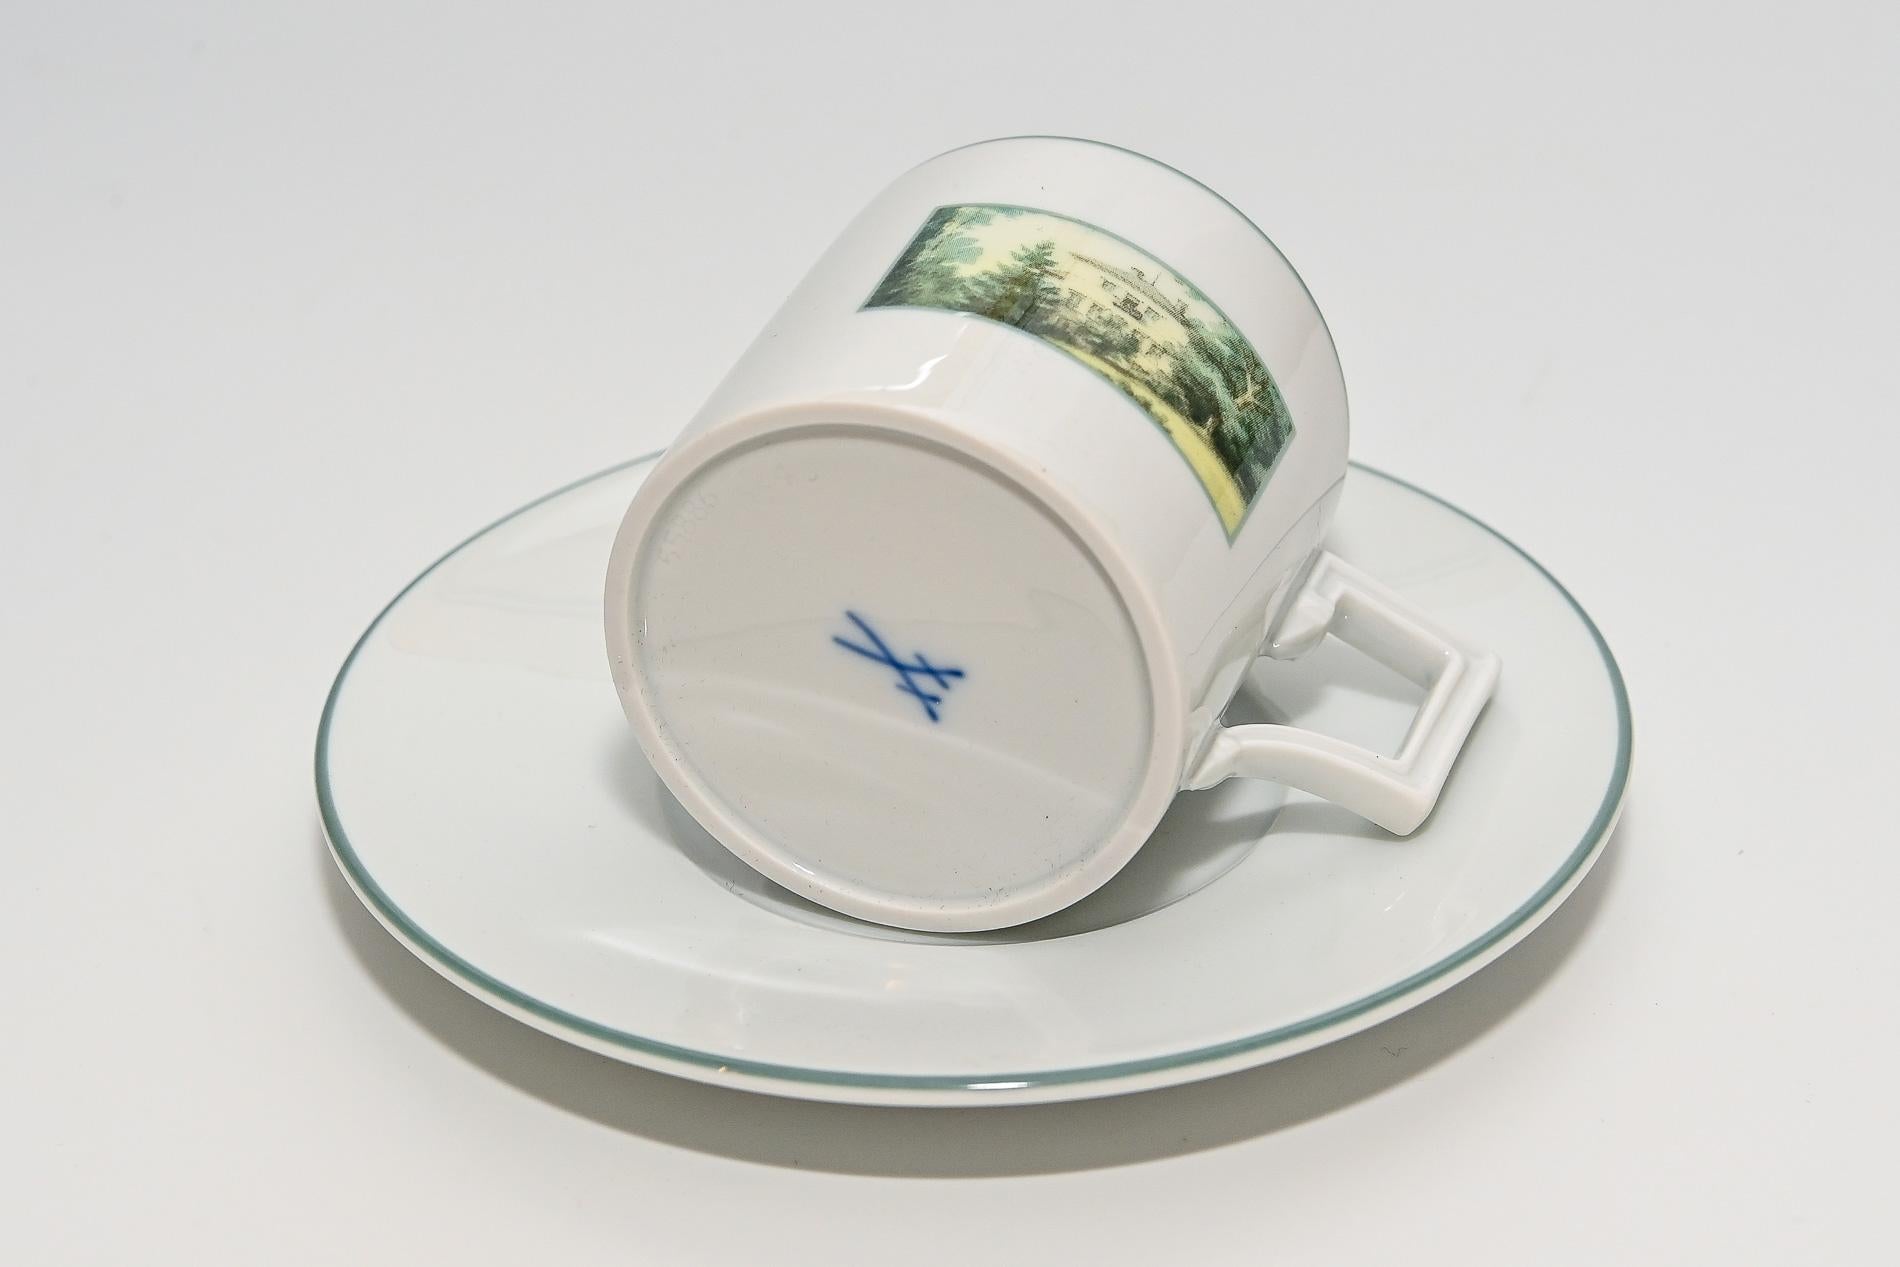 German 21th Century Meissen Porcelain Espressoset richard Wagner Bayreuth Fantaisie For Sale